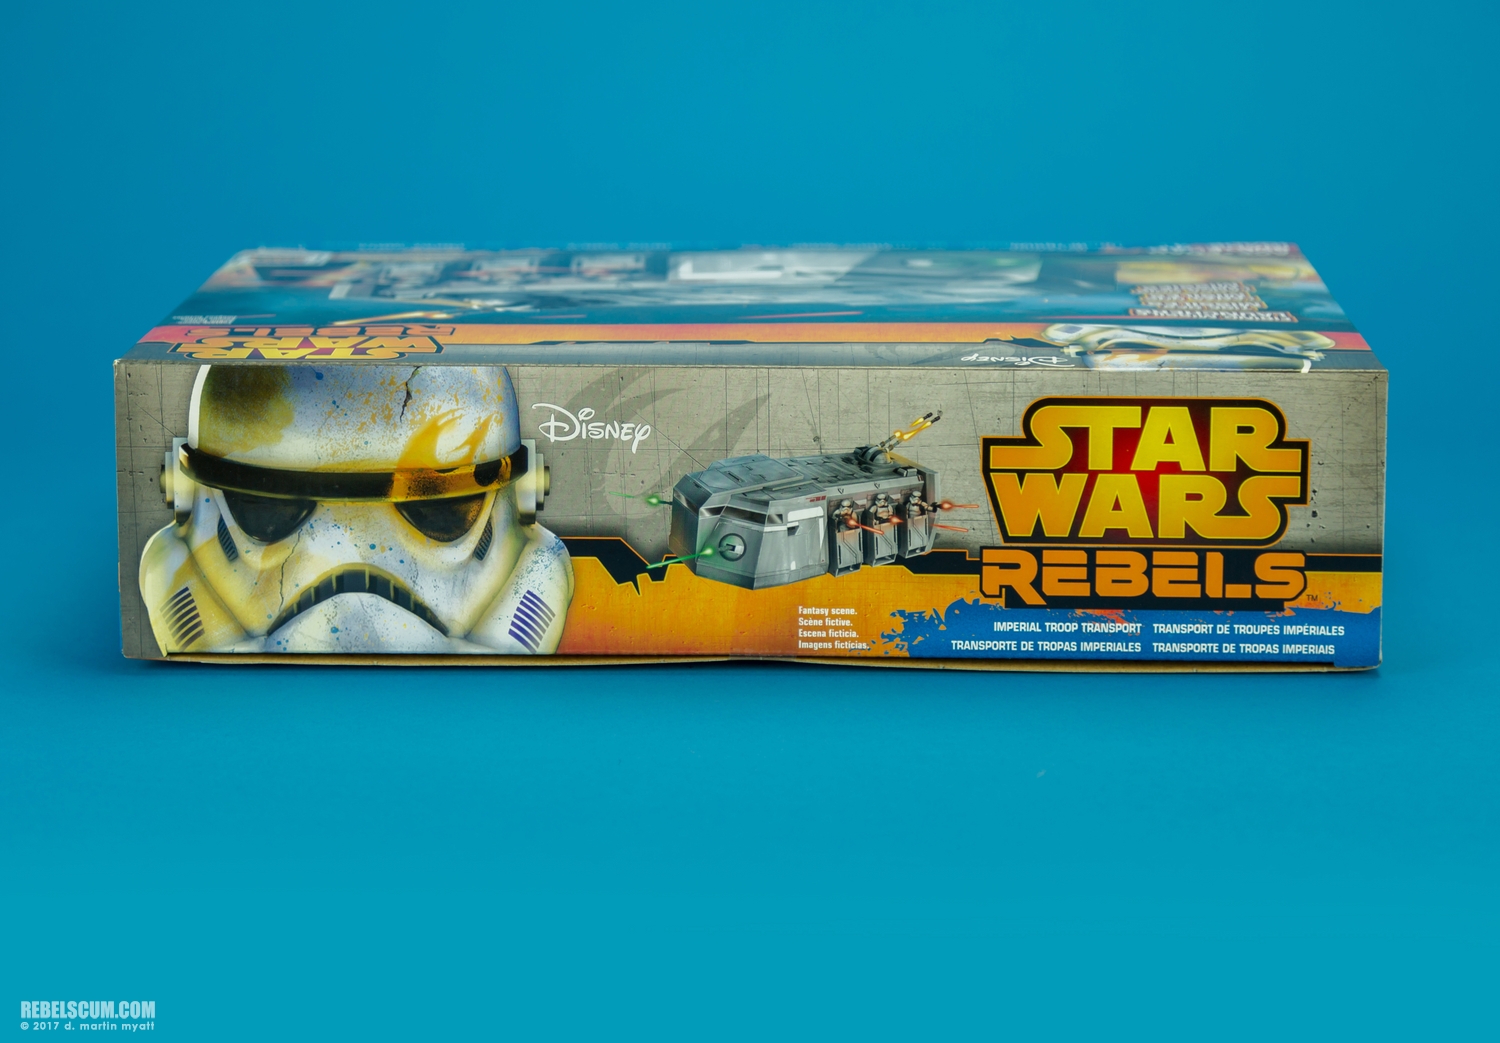 Imperial-Troop-Transport-Star-Wars-Rebels-Vehicle-Hasbro-028.jpg